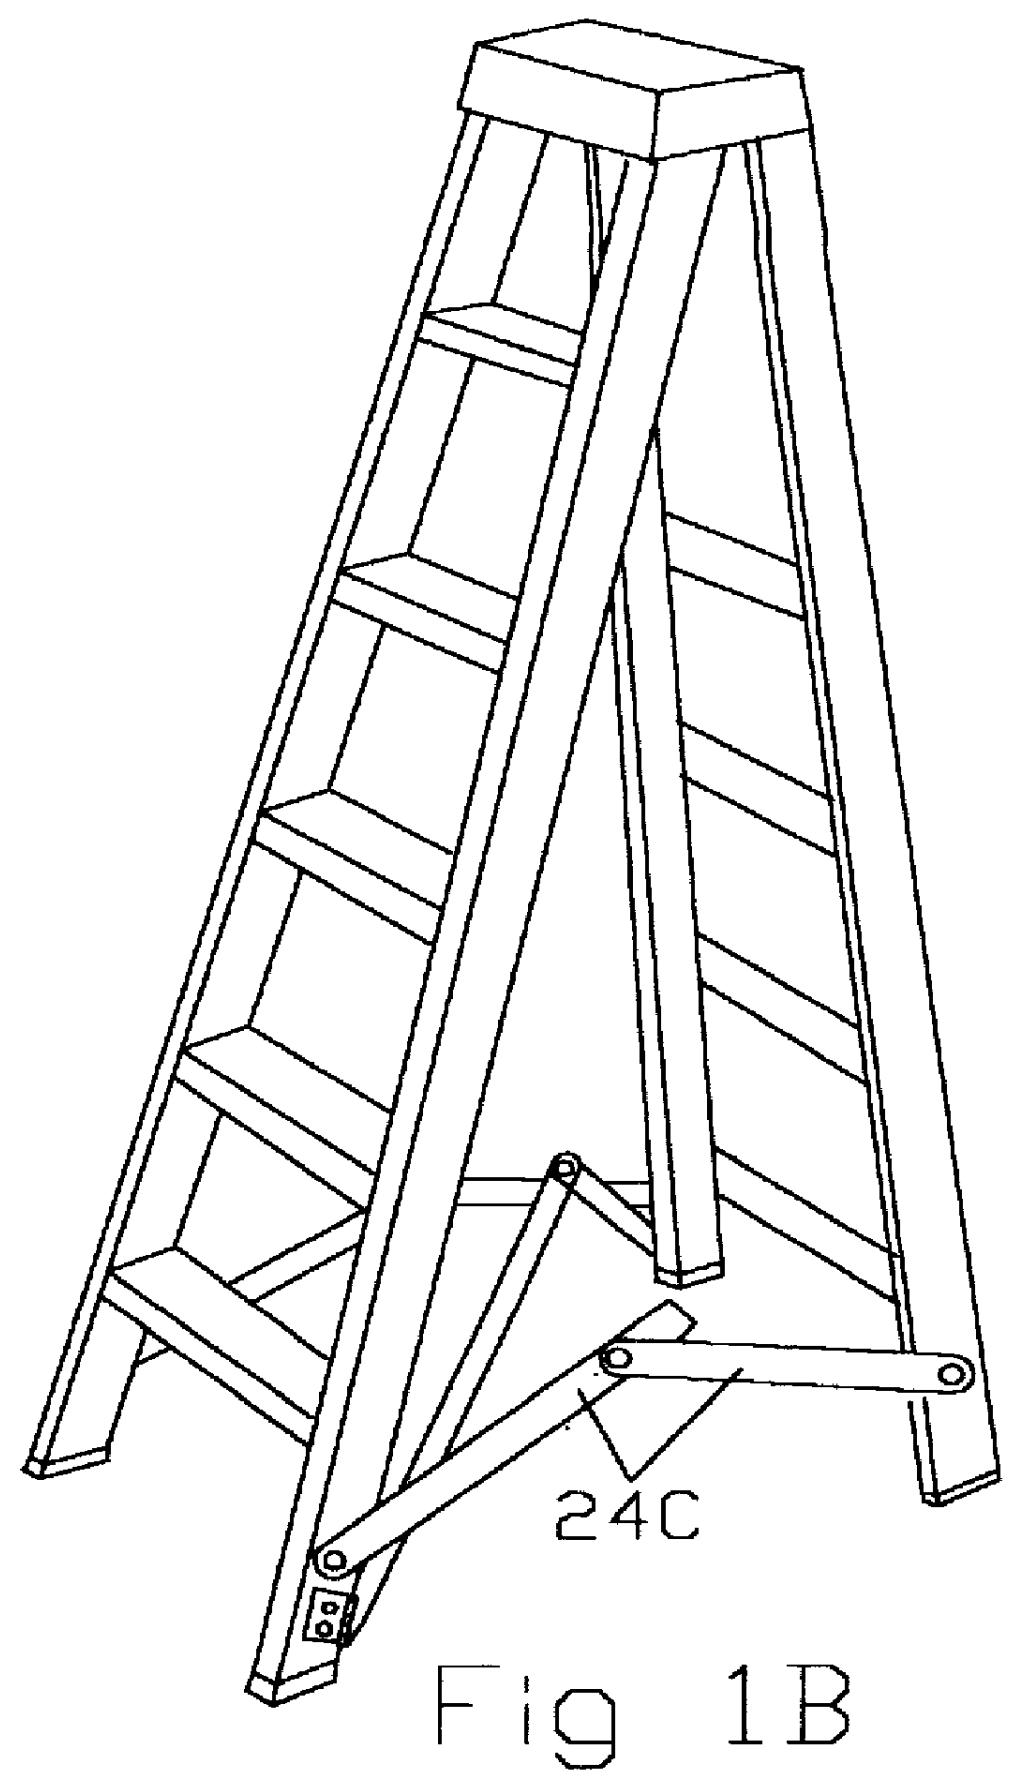 Ladder stabilizing cross brace